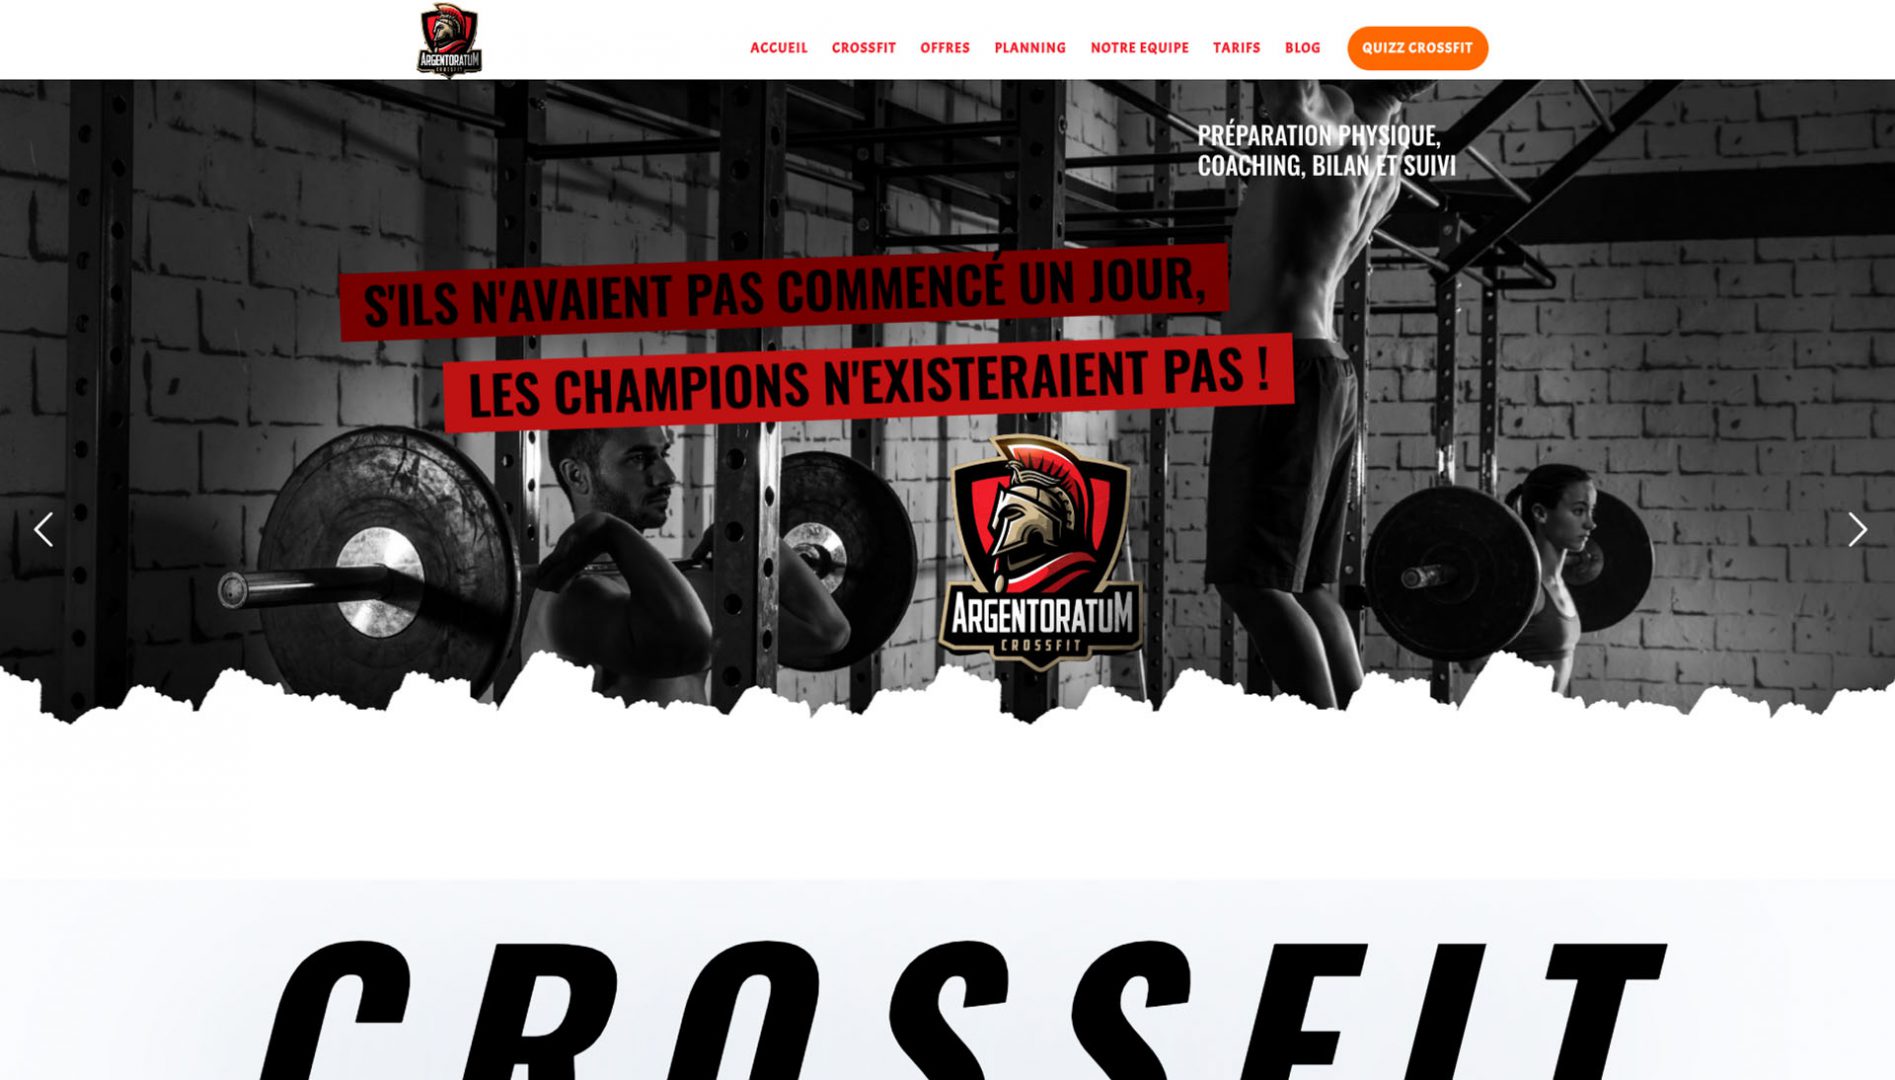 Crossfit Argentoratum: crossfit website design inspiration